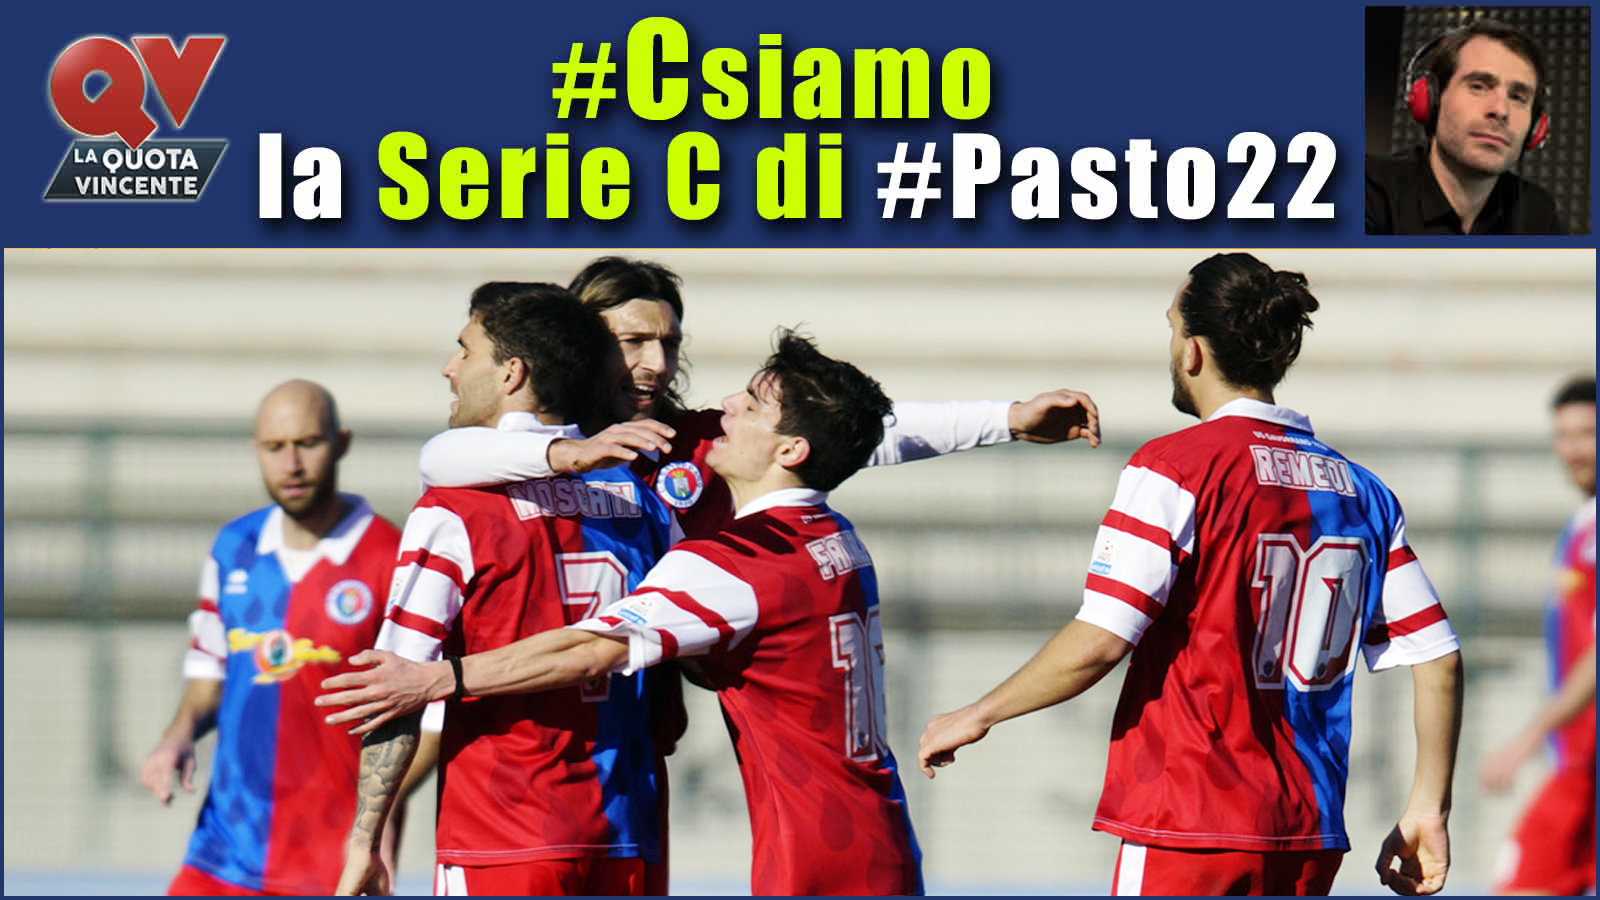 Pronostici Serie C 26 maggio: #Csiamo, il blog di #Pasto22 speciale playout e supercoppa